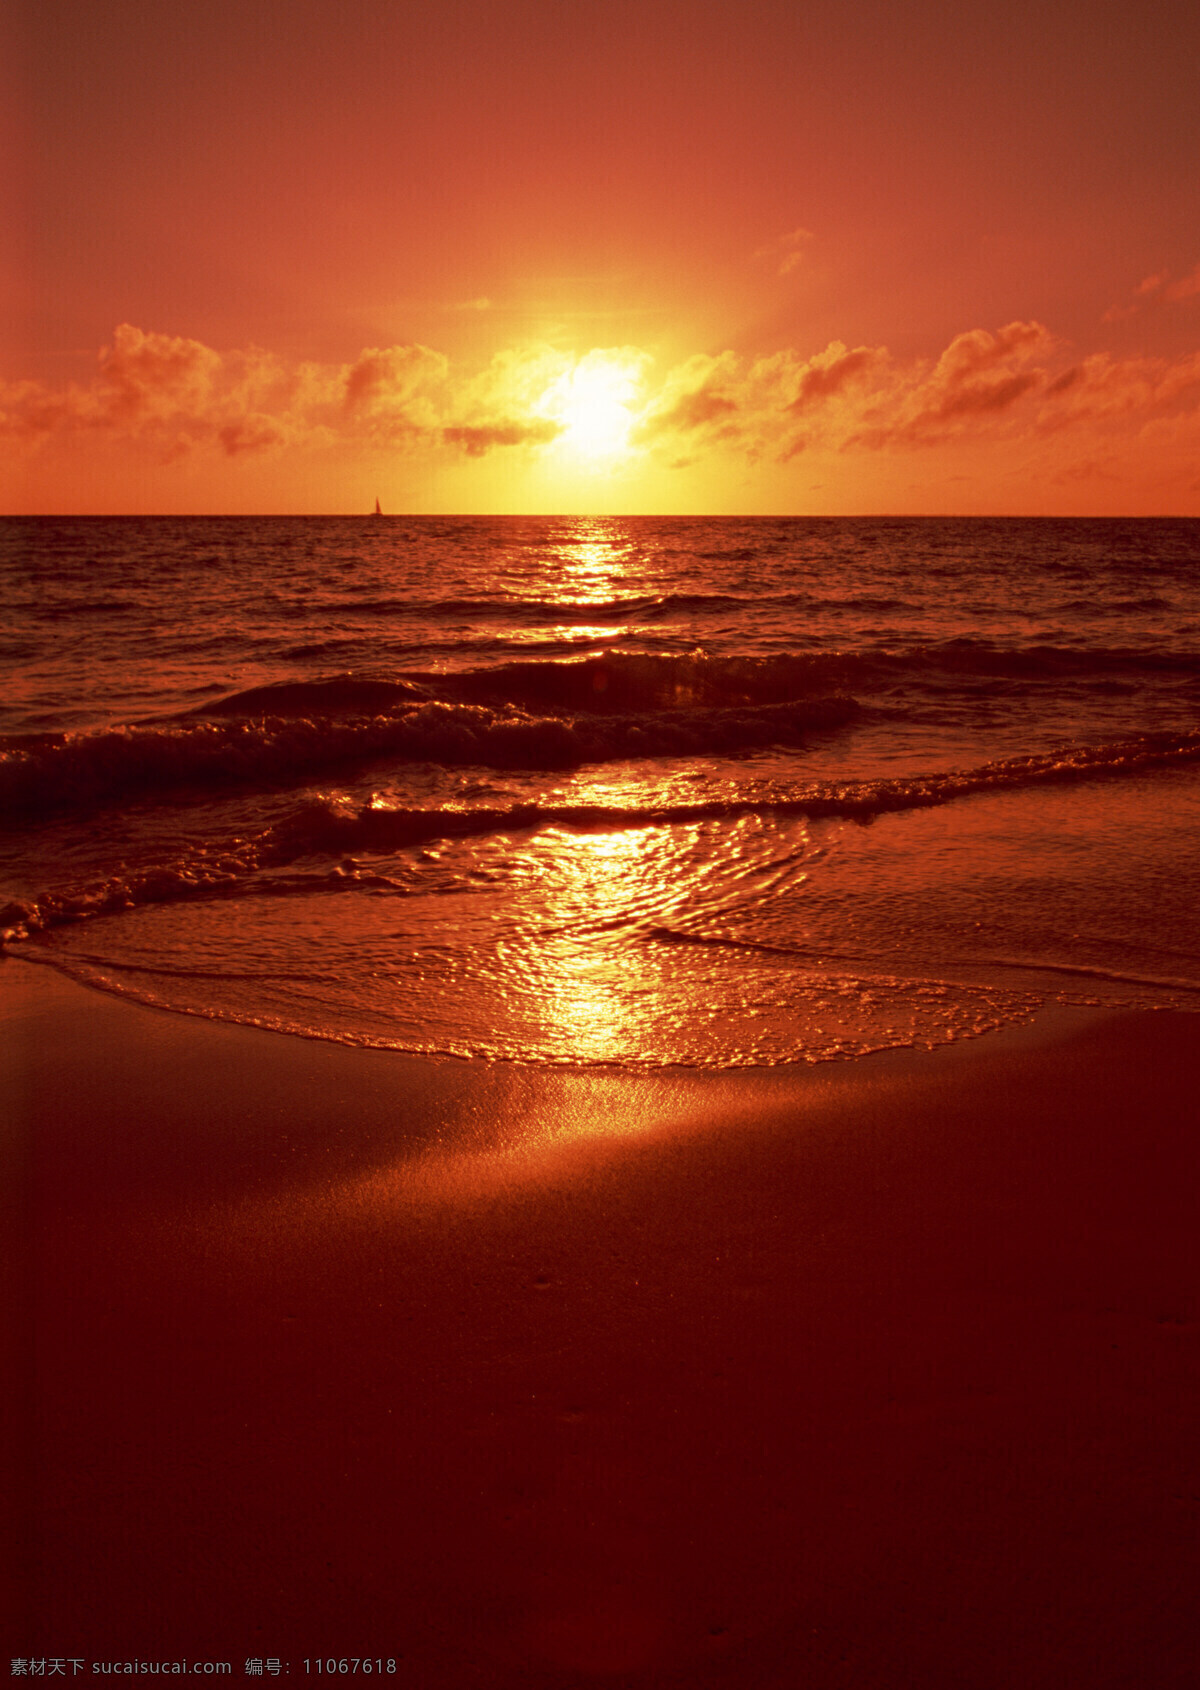 海边的日出 海边 海上日出 海水 海滩 落日 日出 日出东方 边的日出 太阳 旭日东升 水天相接 潮汐 阳光 海边日出 夕阳 自然风景 自然景观